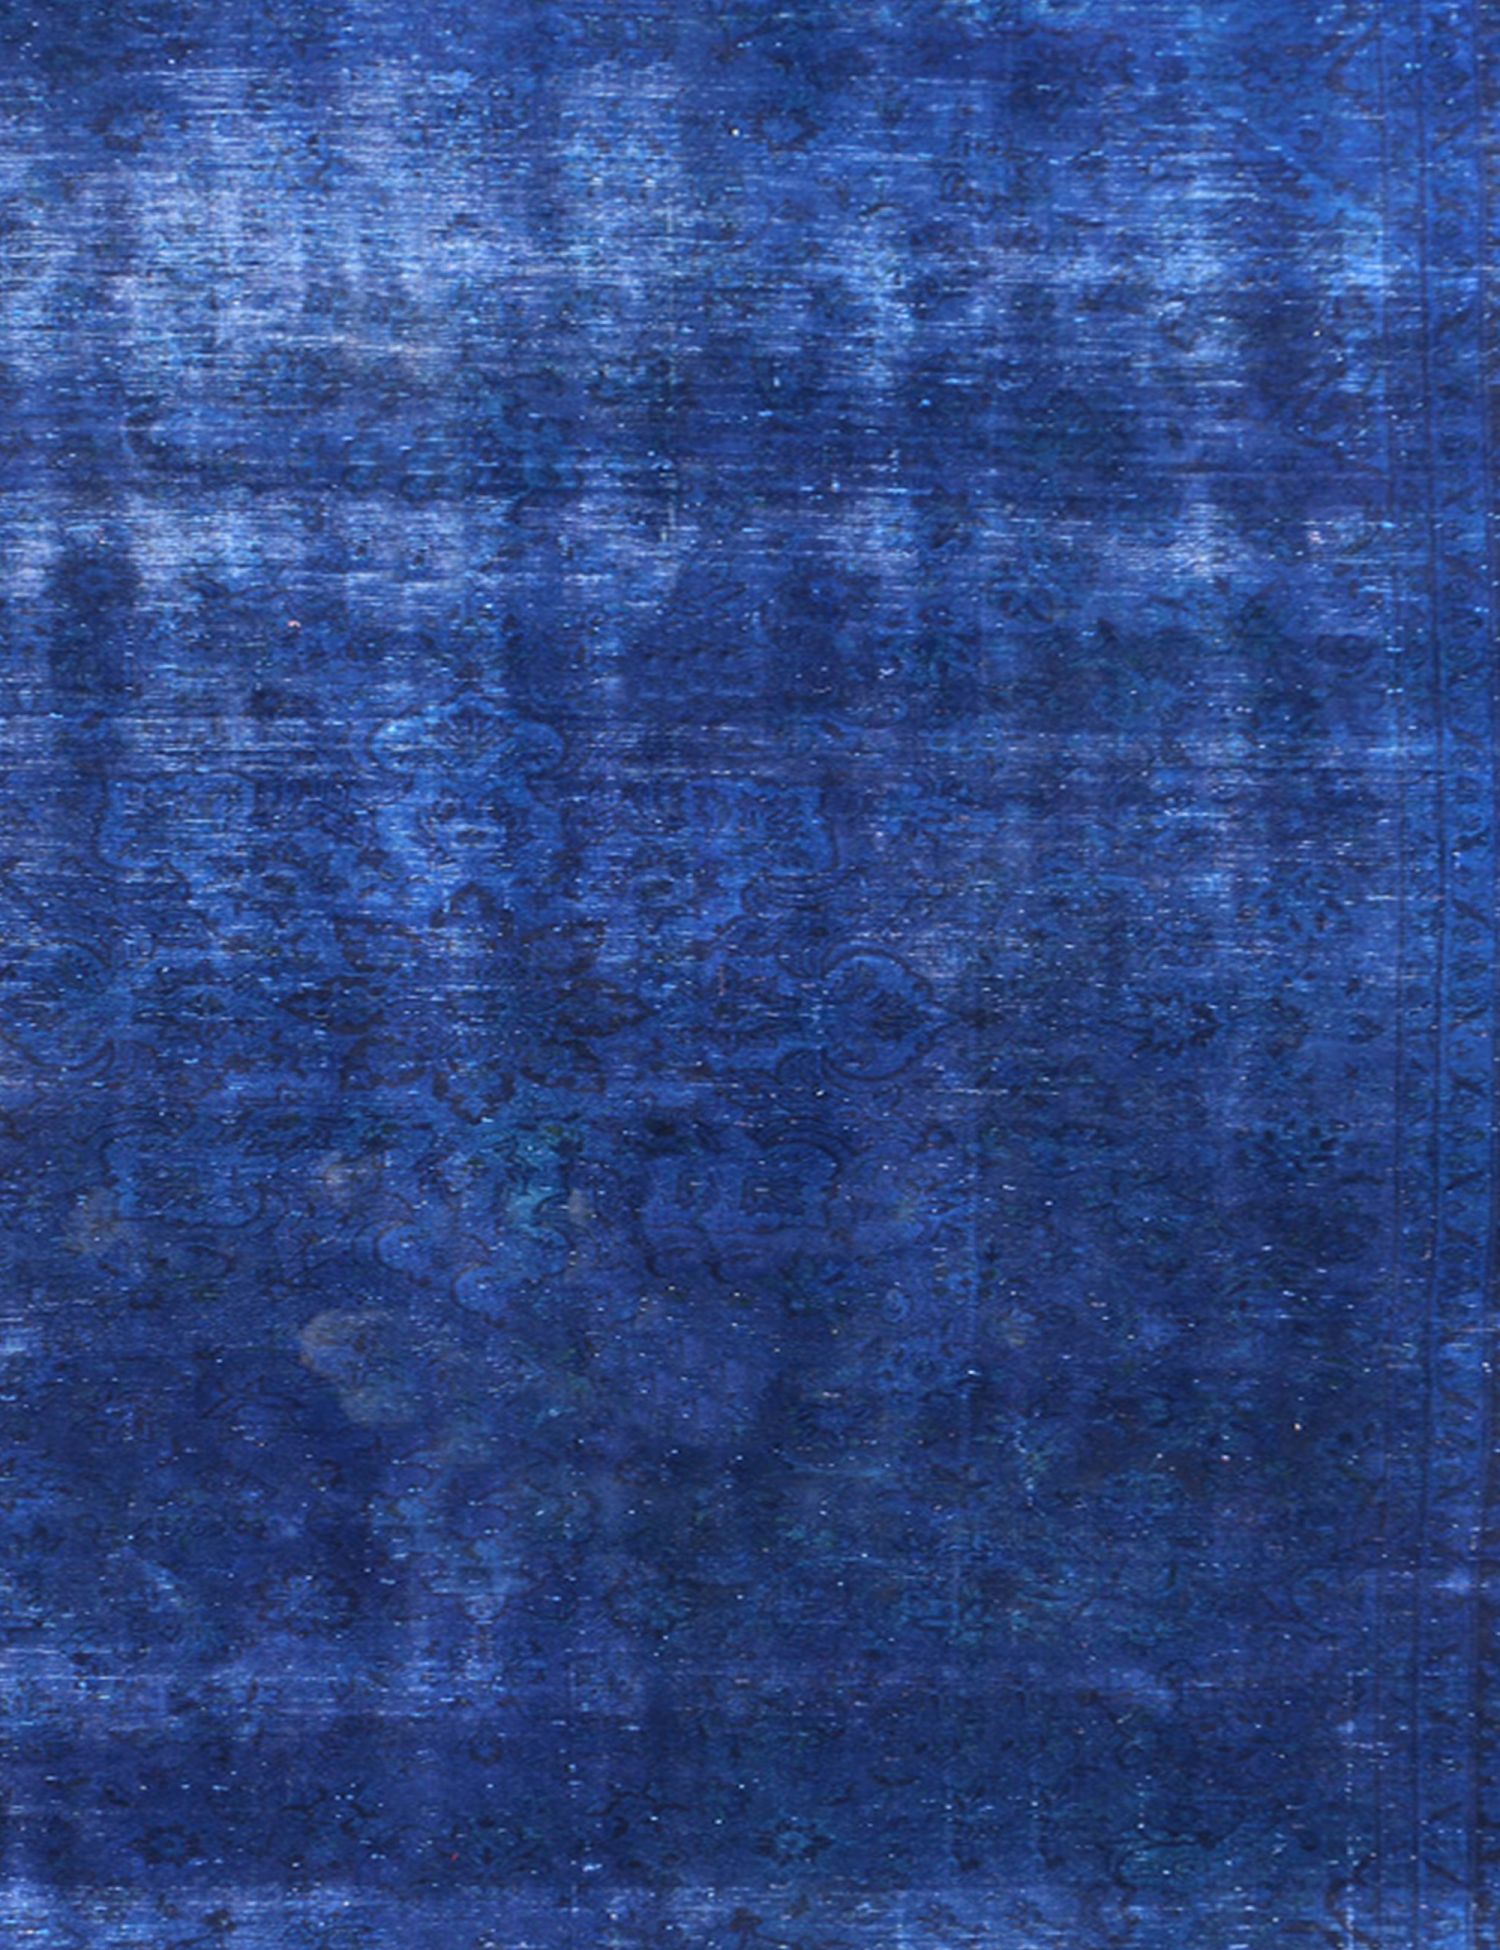 Vintage Teppich  blau <br/>200 x 200 cm